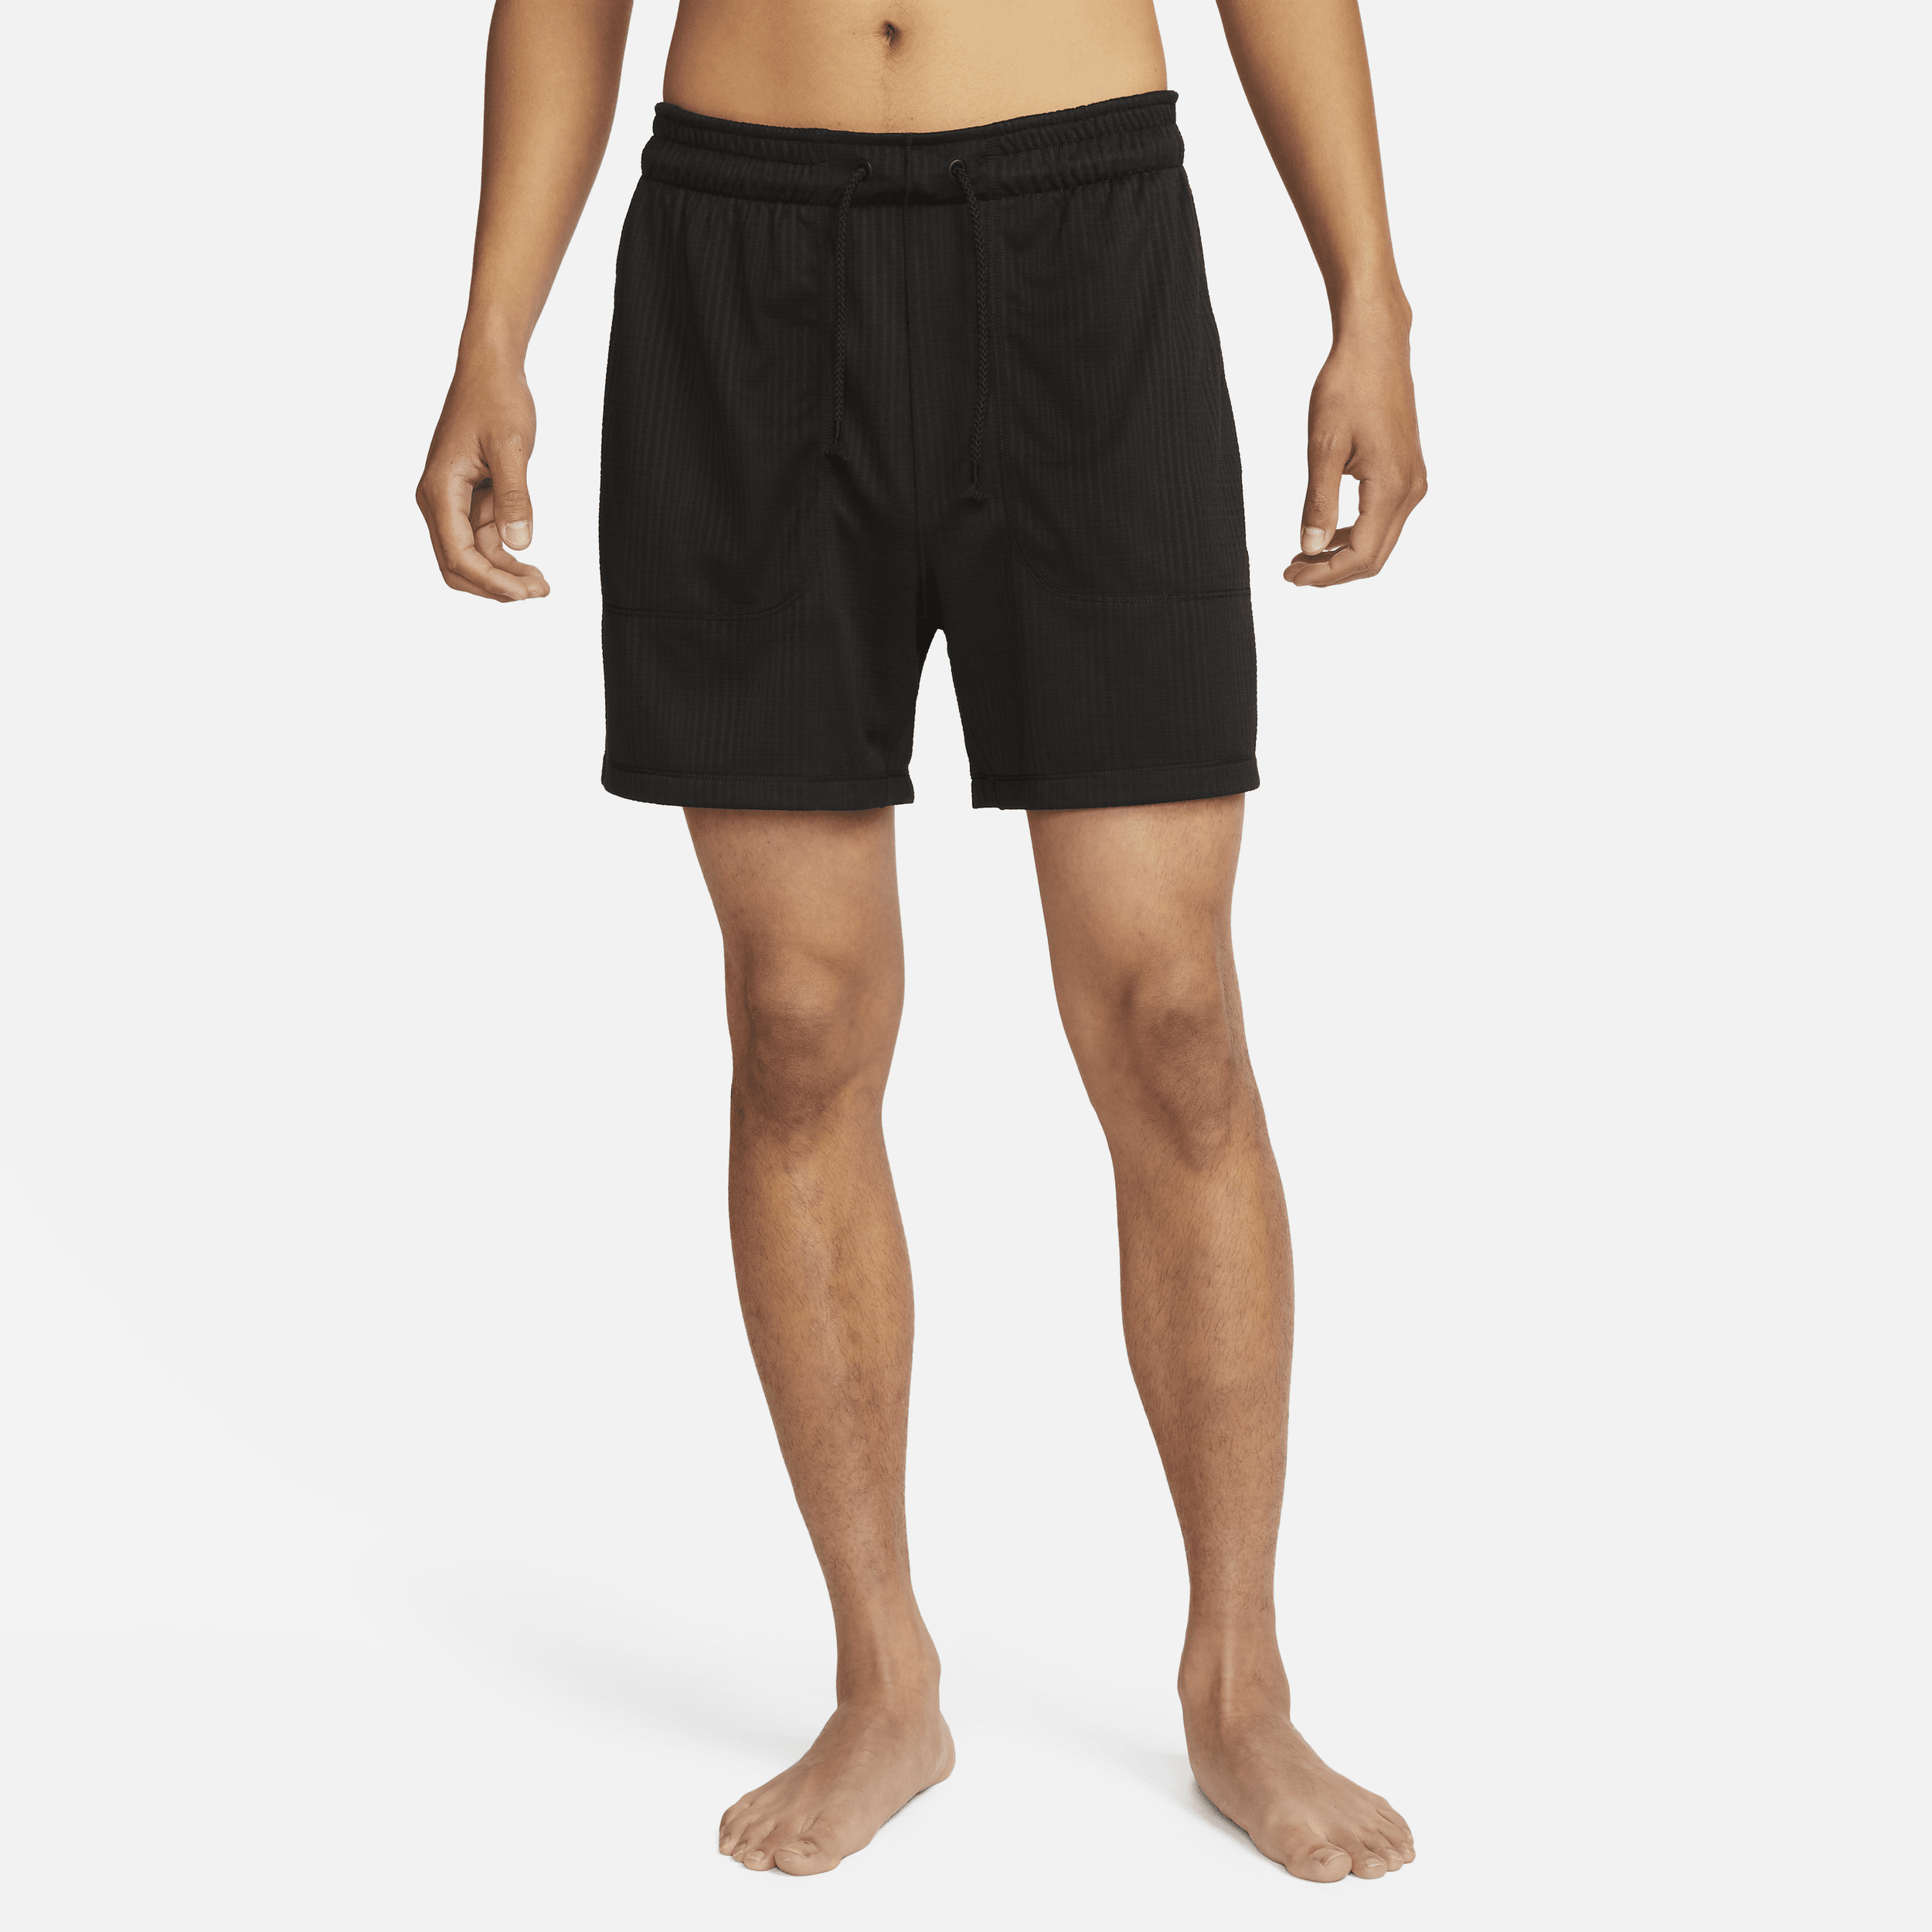 Nike Yoga Pantalón corto Dri-FIT de 13 cm sin forro - Hombre - Negro